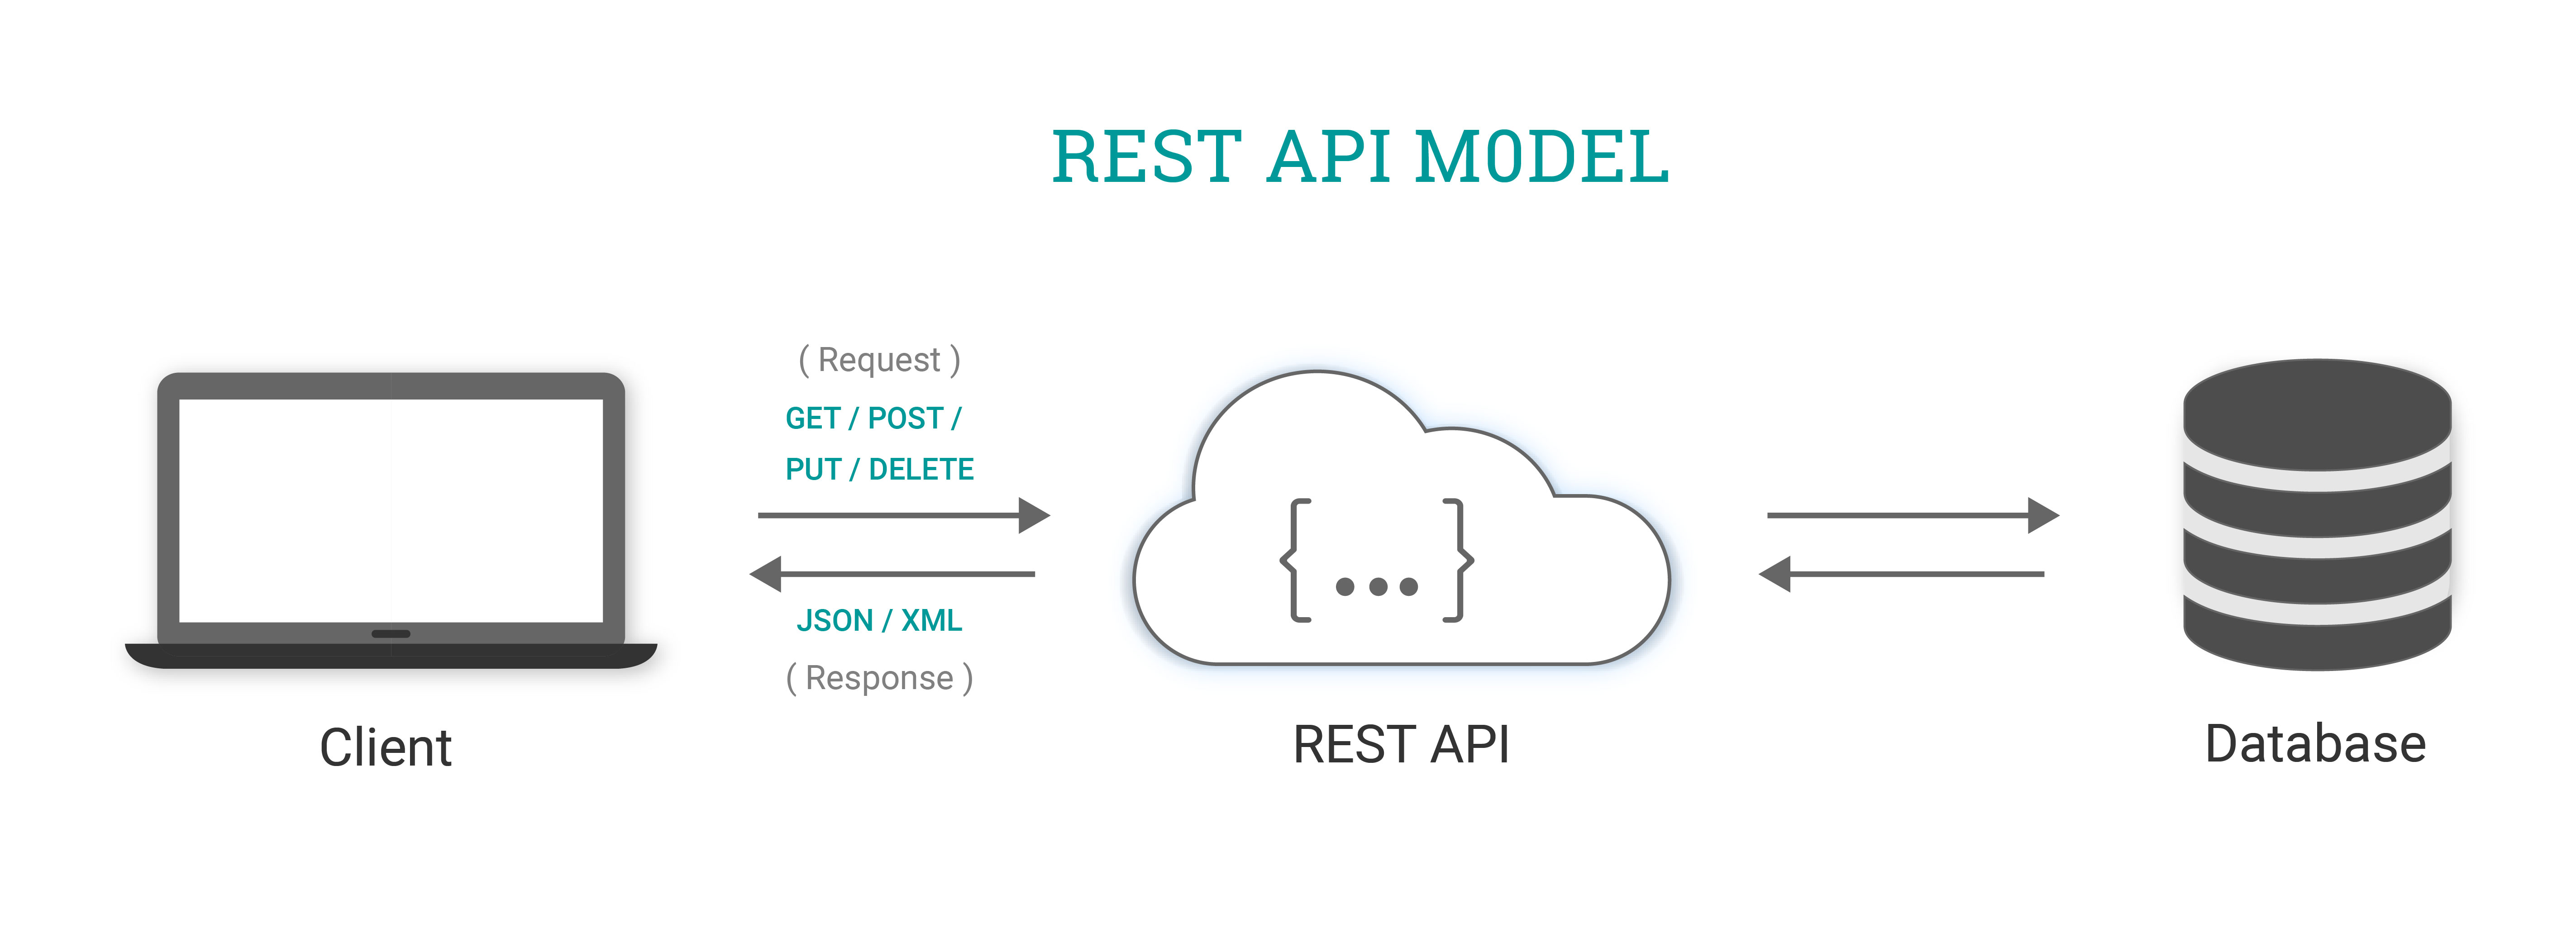 SICON_Rest API Model_img_REST API Model.jpg